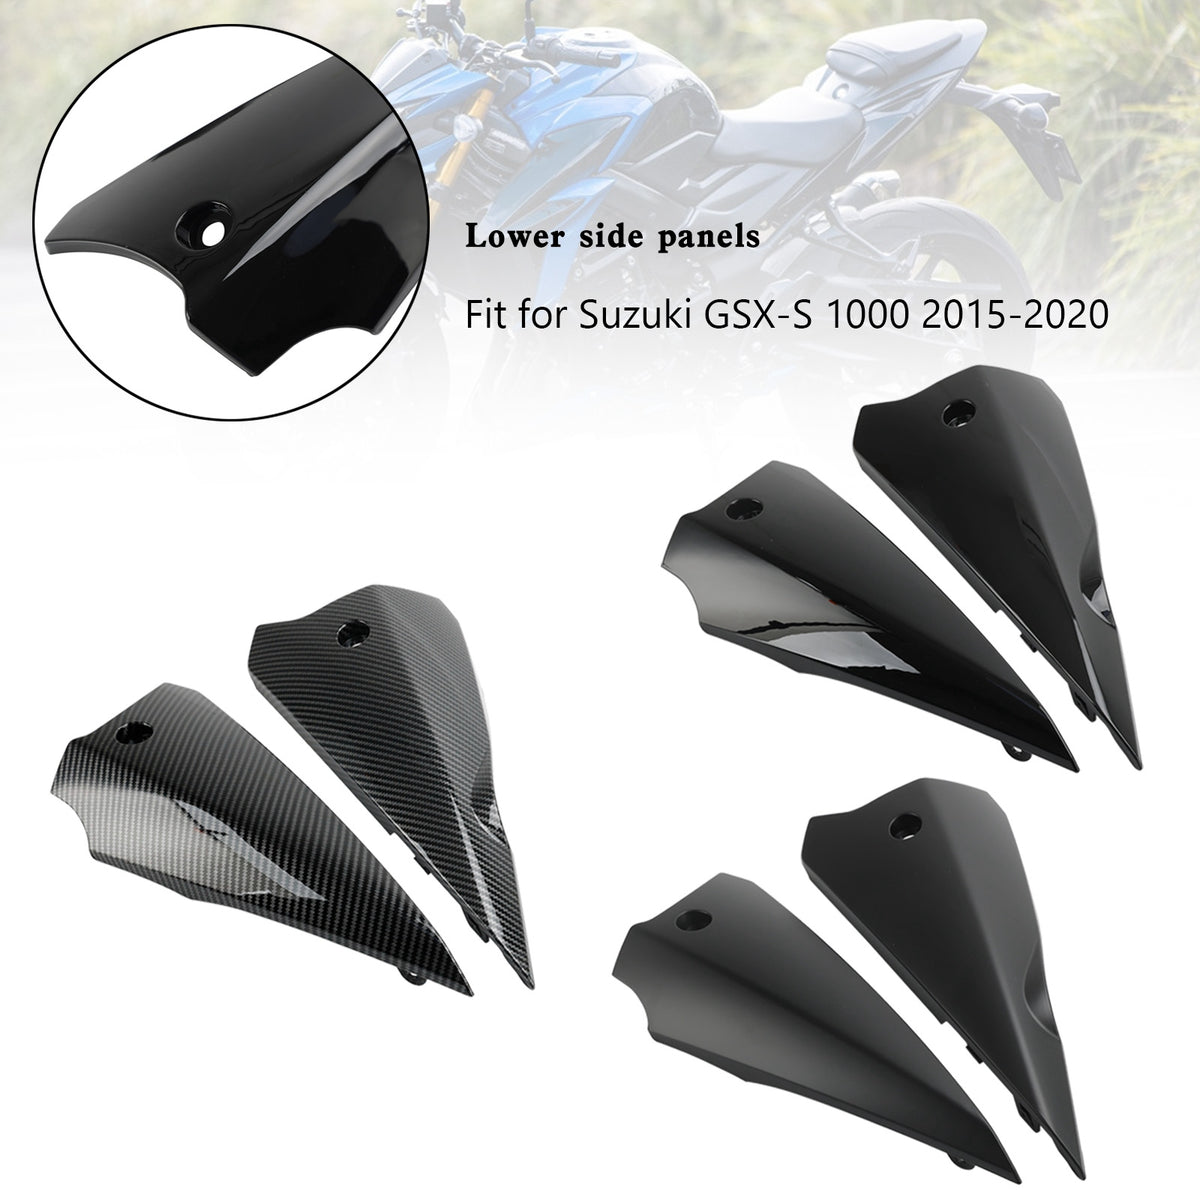 Pannelli superiori della carenatura laterale inferiore per Suzuki GSX-S 1000 2015-2020